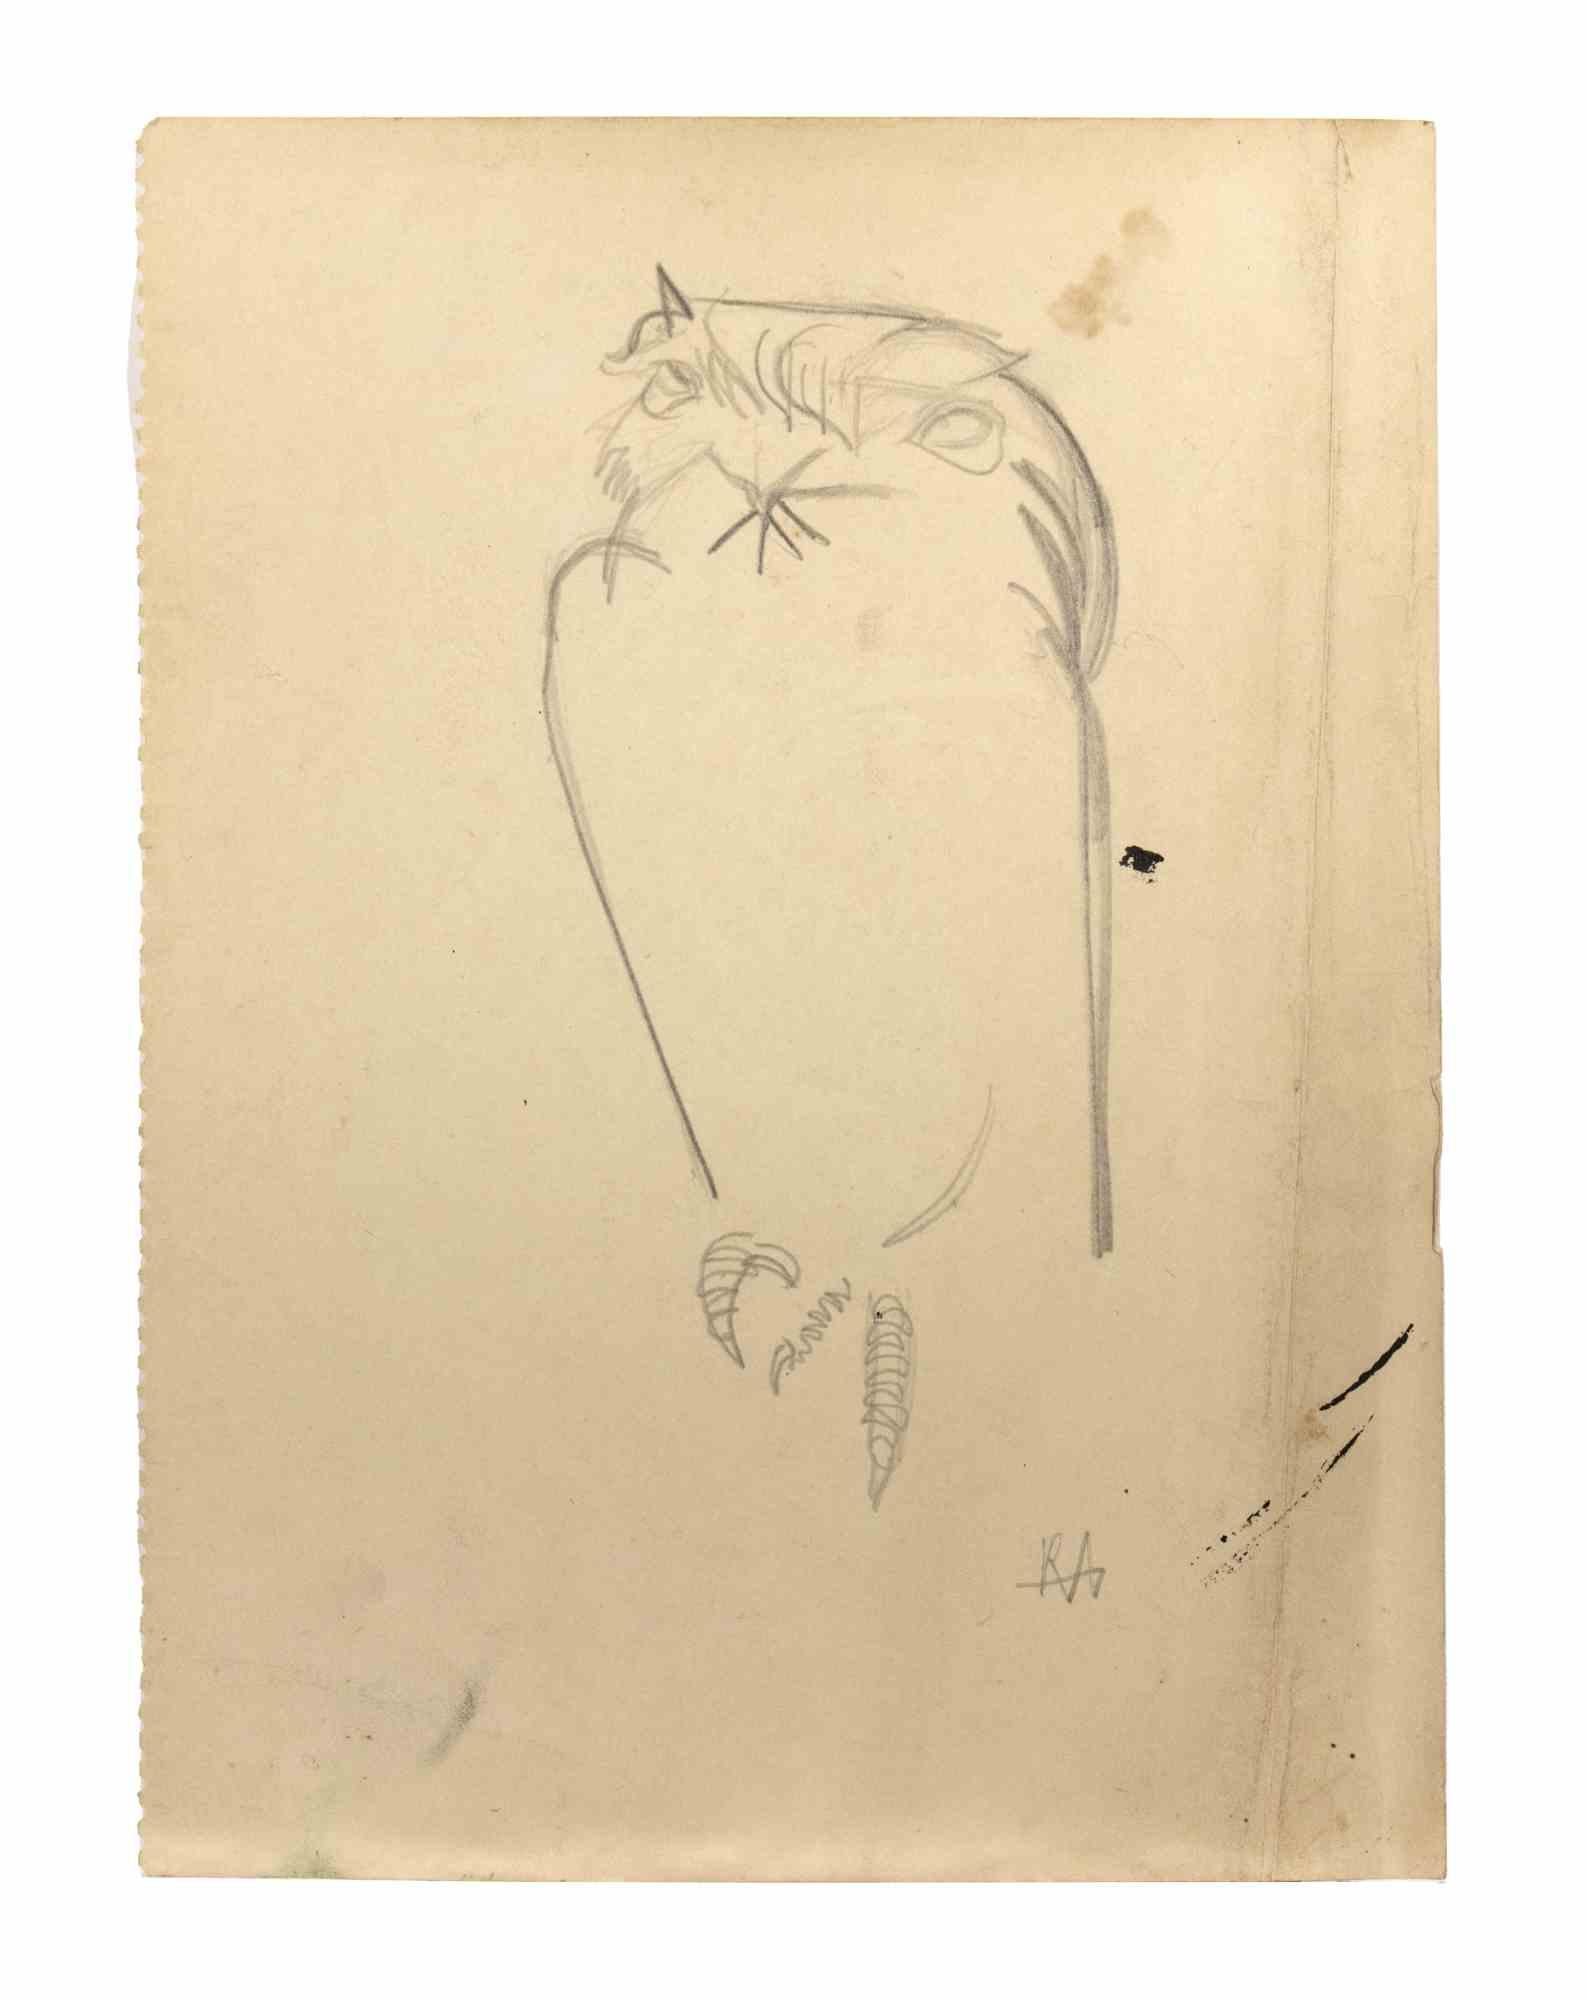 Hibou est un dessin au crayon réalisé par Reynold Arnould  (Le Havre 1919 - Parigi 1980).

Bon état sur un papier jauni, monogrammé par l'artiste dans le coin inférieur droit.

Le dessin représente une chouette, et deux hiboux au dos, inclus un